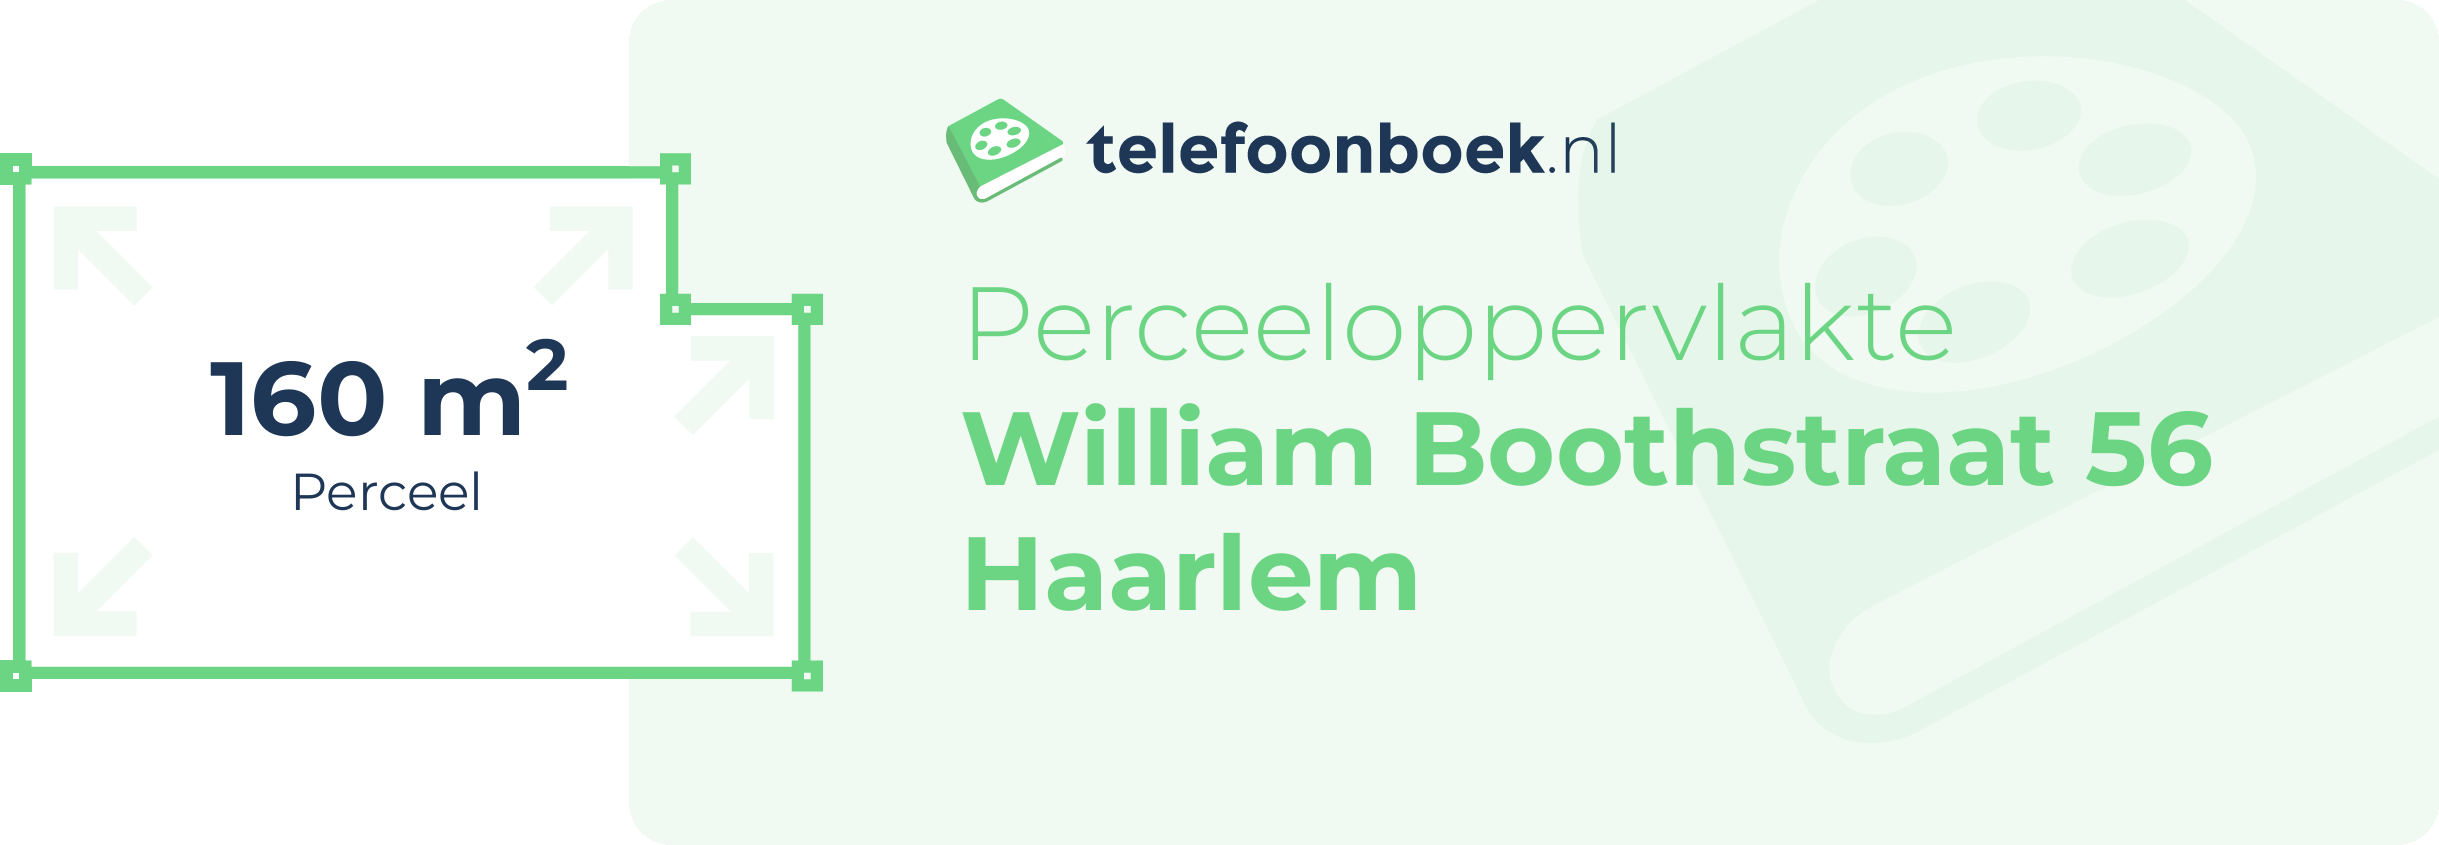 Perceeloppervlakte William Boothstraat 56 Haarlem